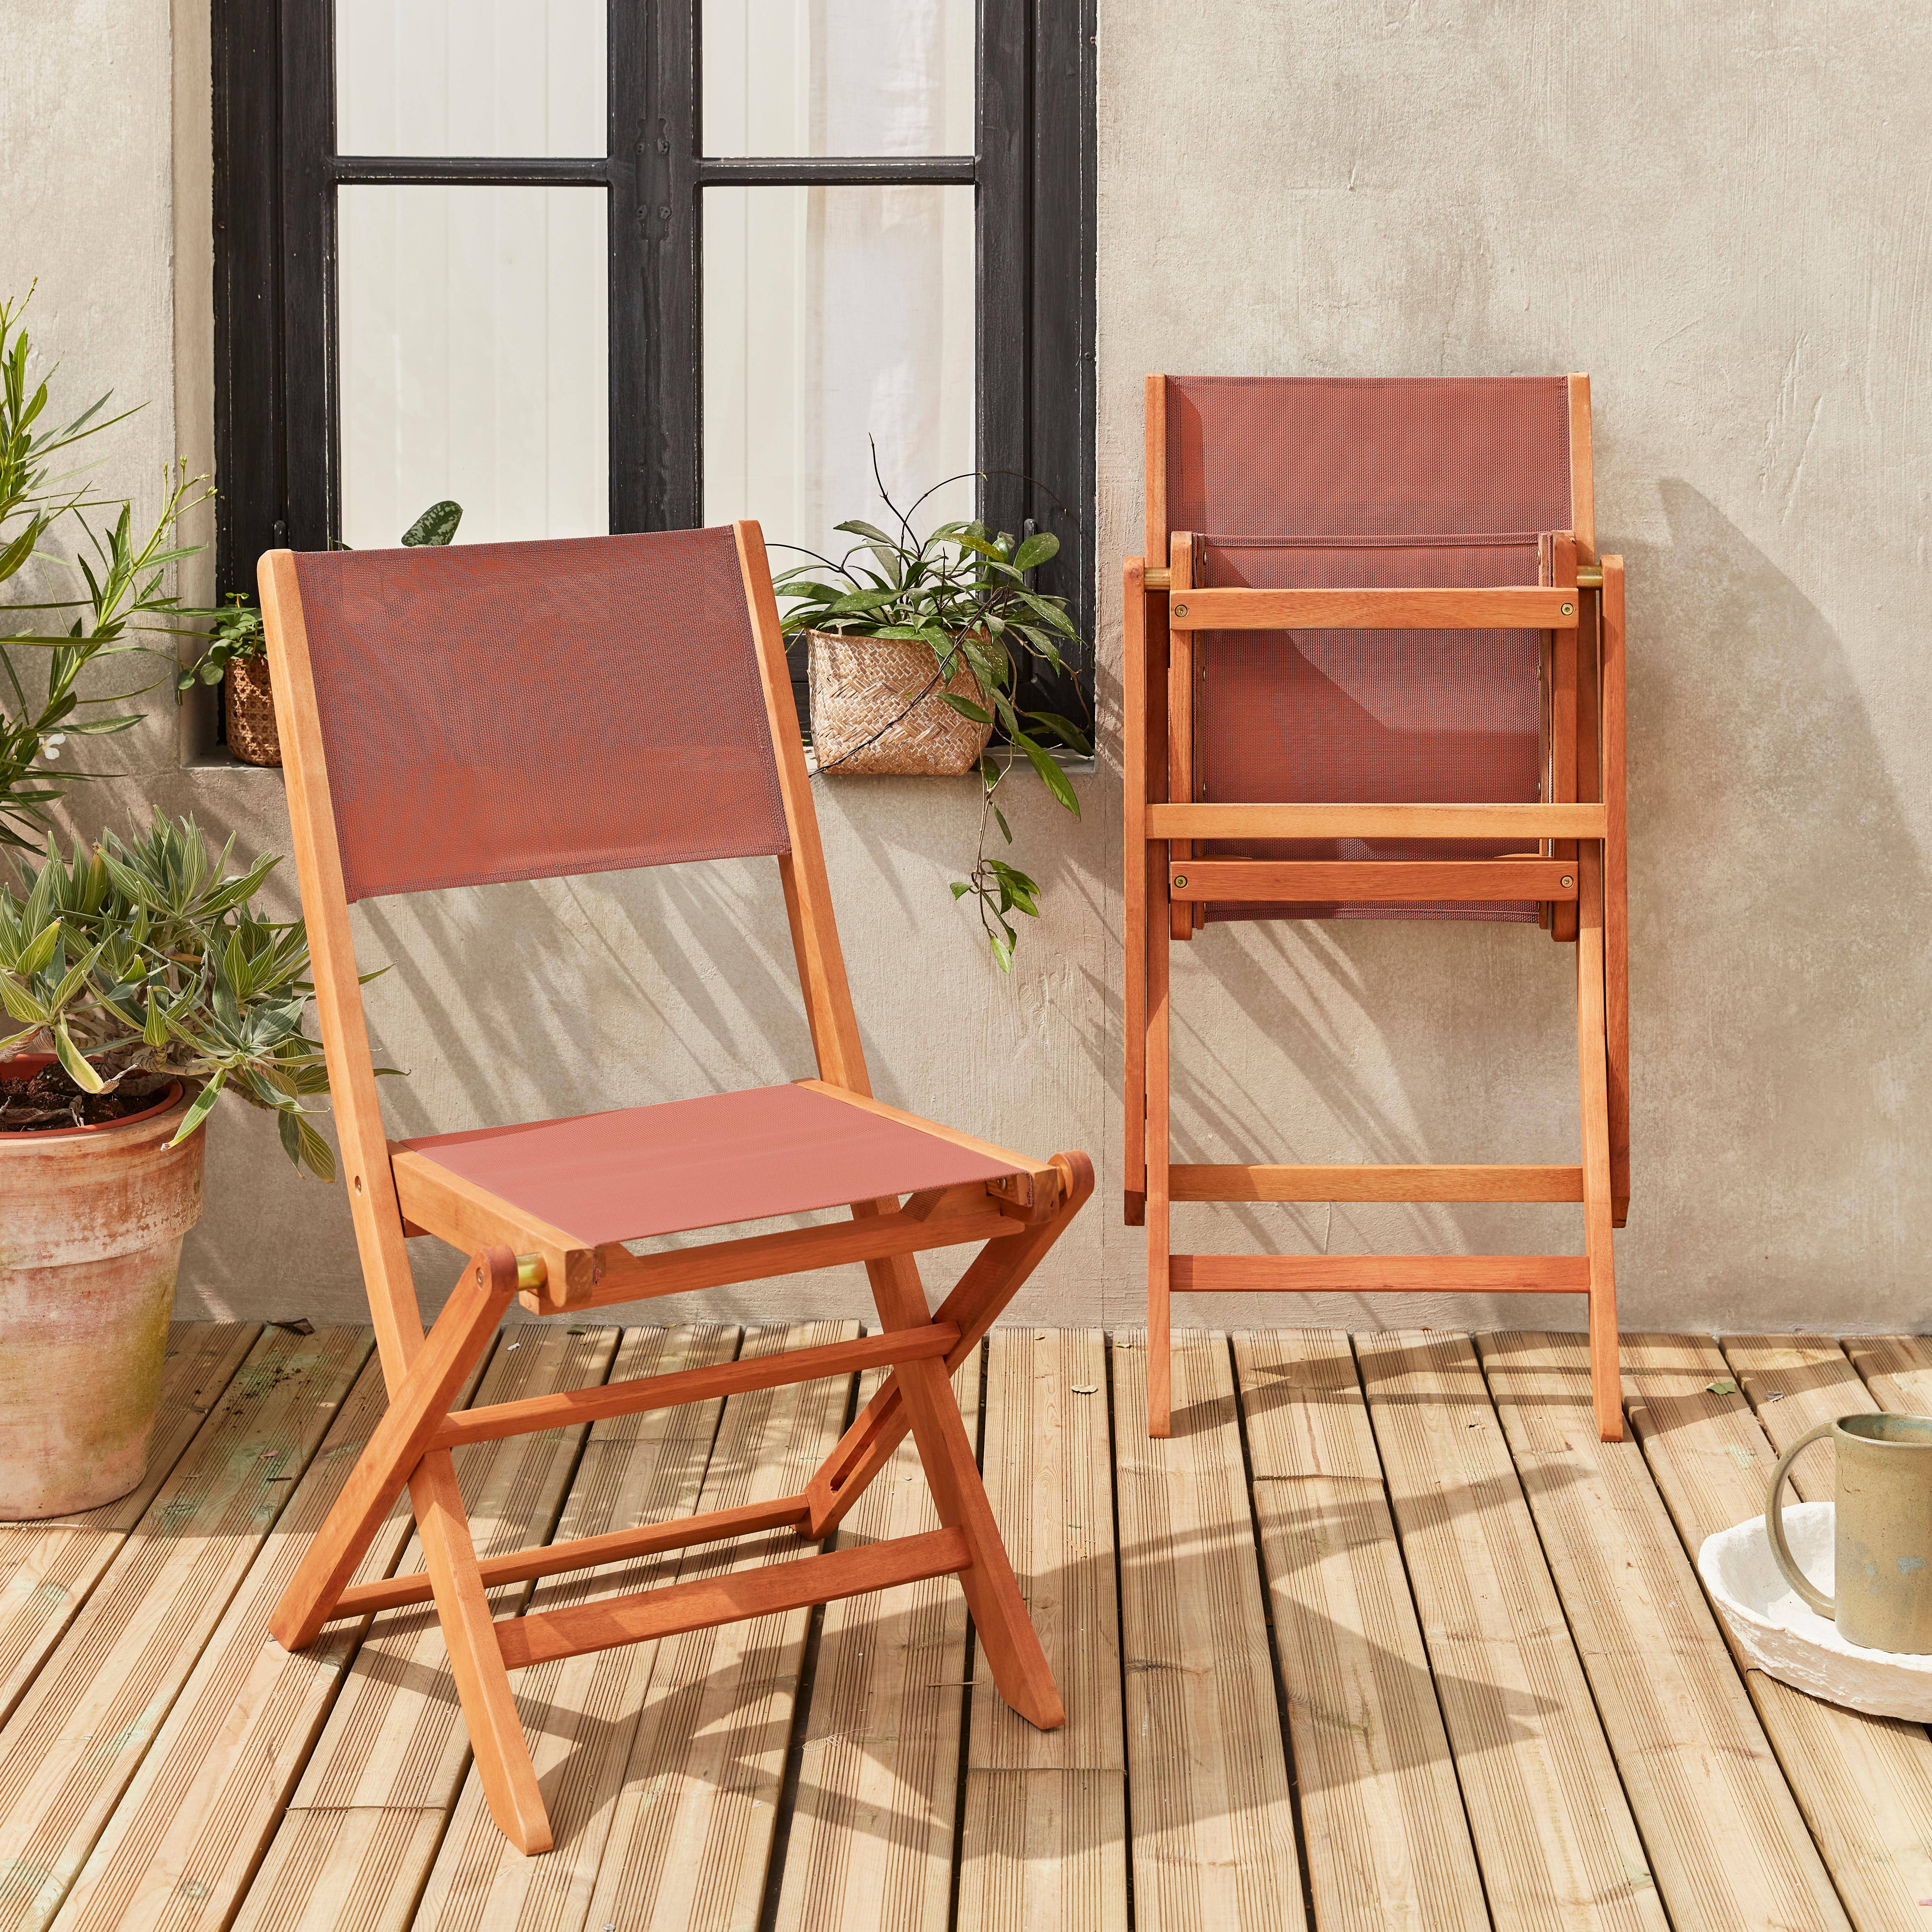 Gartenstühle aus Holz und Textilene - Almeria terrakotta - 2 Klappstühle aus geöltem FSC Eukalyptusholz und Textilene Photo2